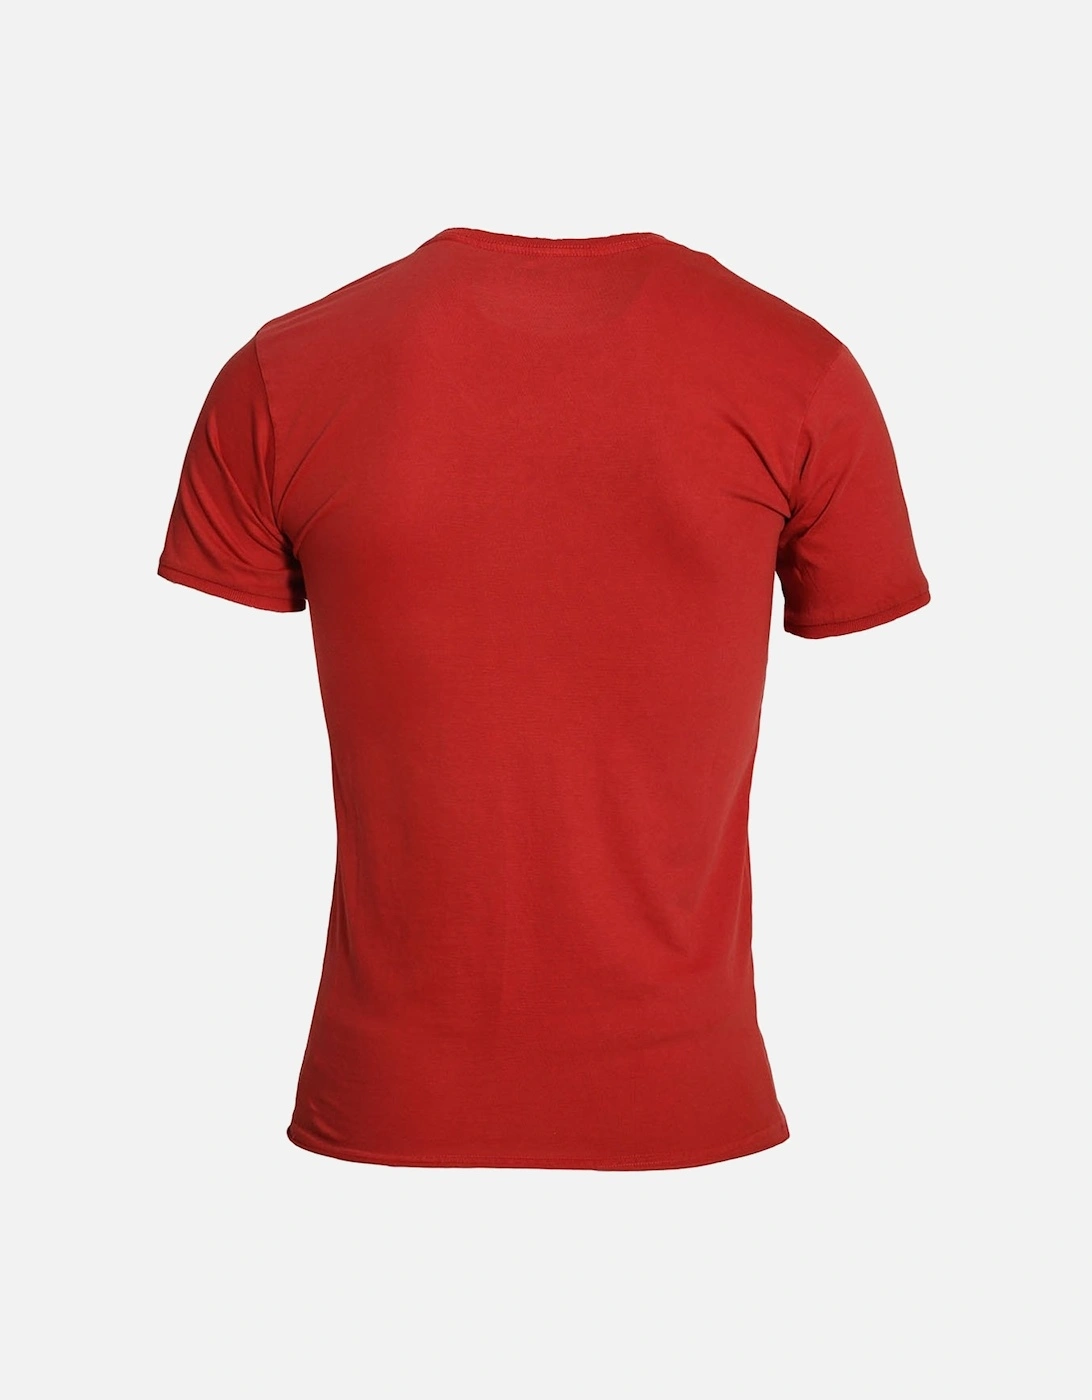 Showtek T-Shirt | Bossa Red & Mustard